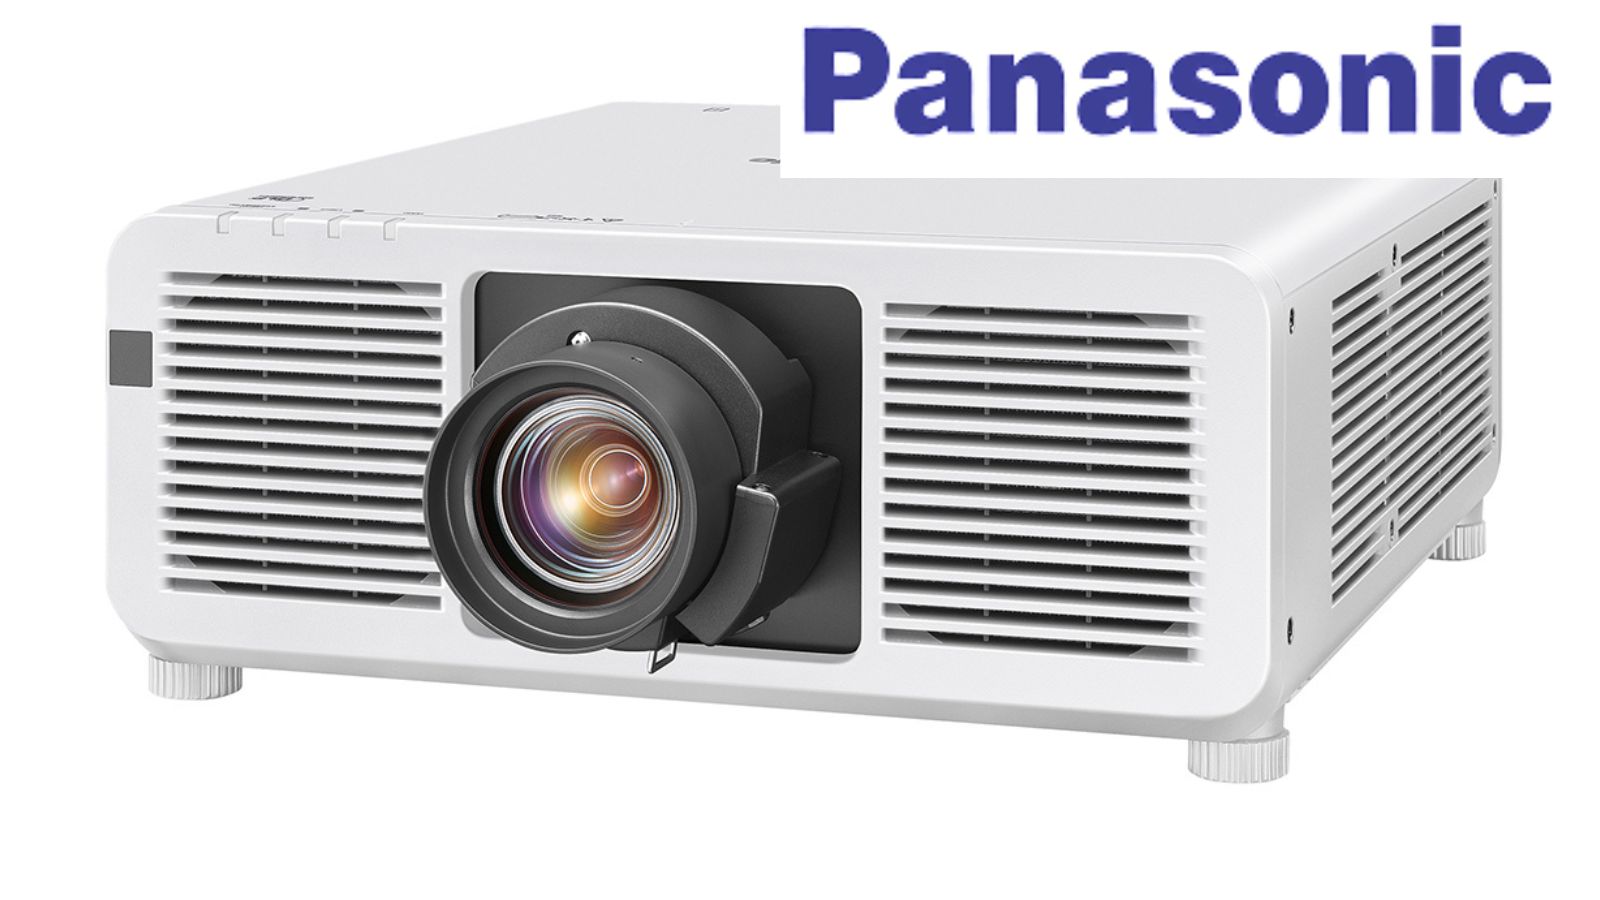 Panasonic proiettore 4K